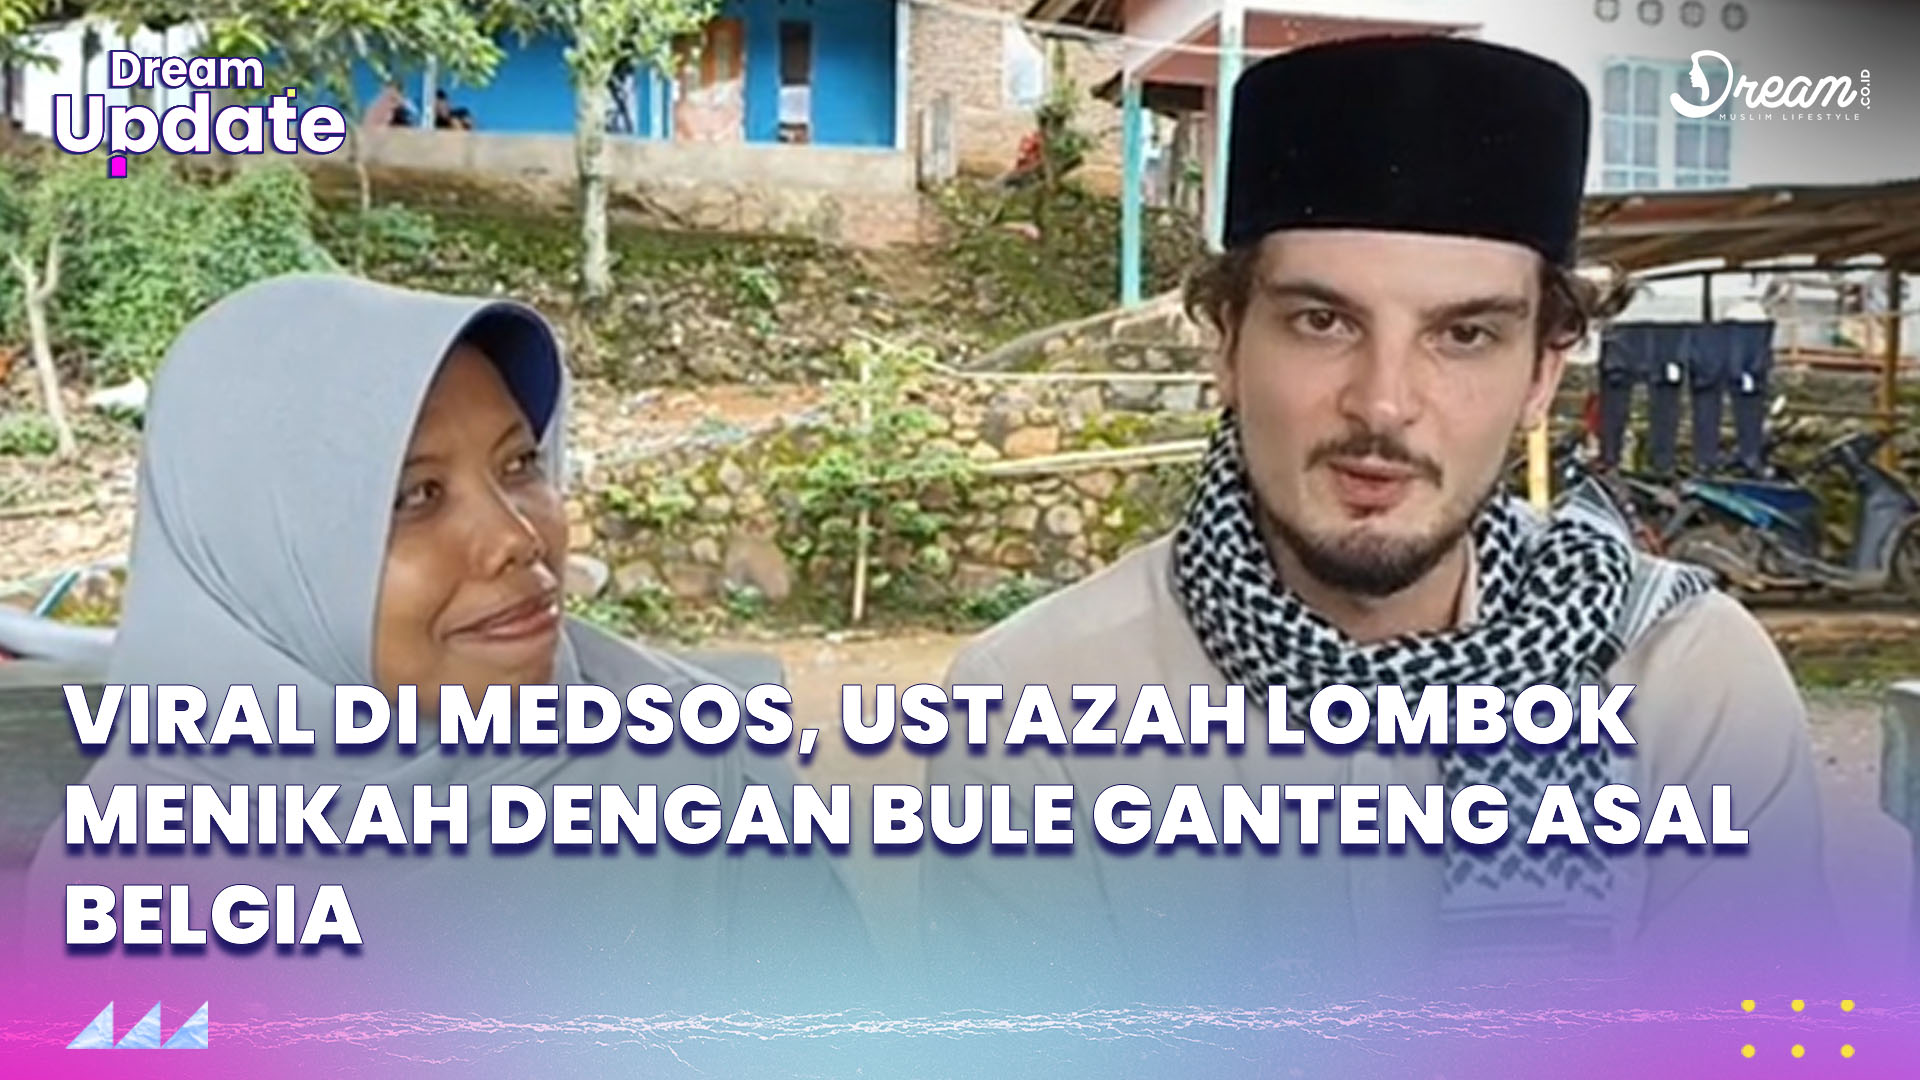 Viral Ustazah Lombok Menikah dengan Bule Ganteng Asal Belgia, Ini Fakta-faktanya